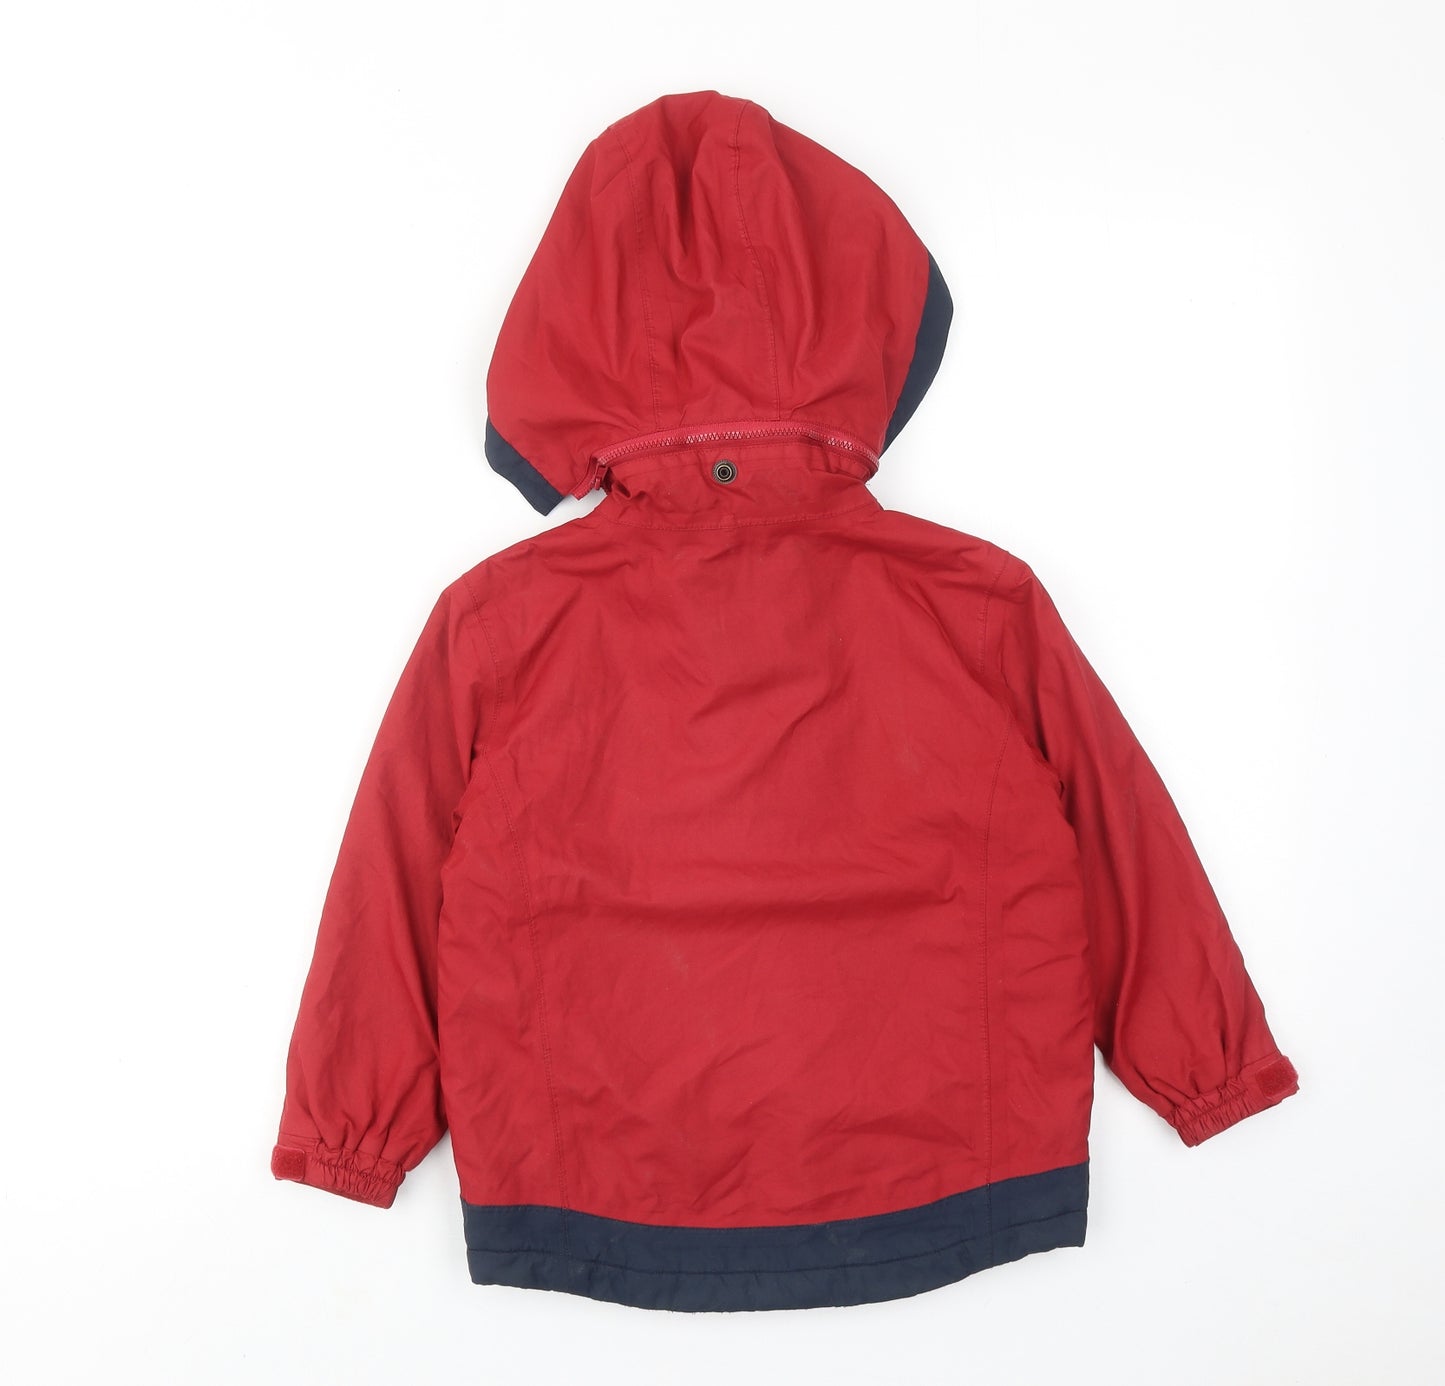 Joules Boys Red Windbreaker Jacket Size 4 Years Zip